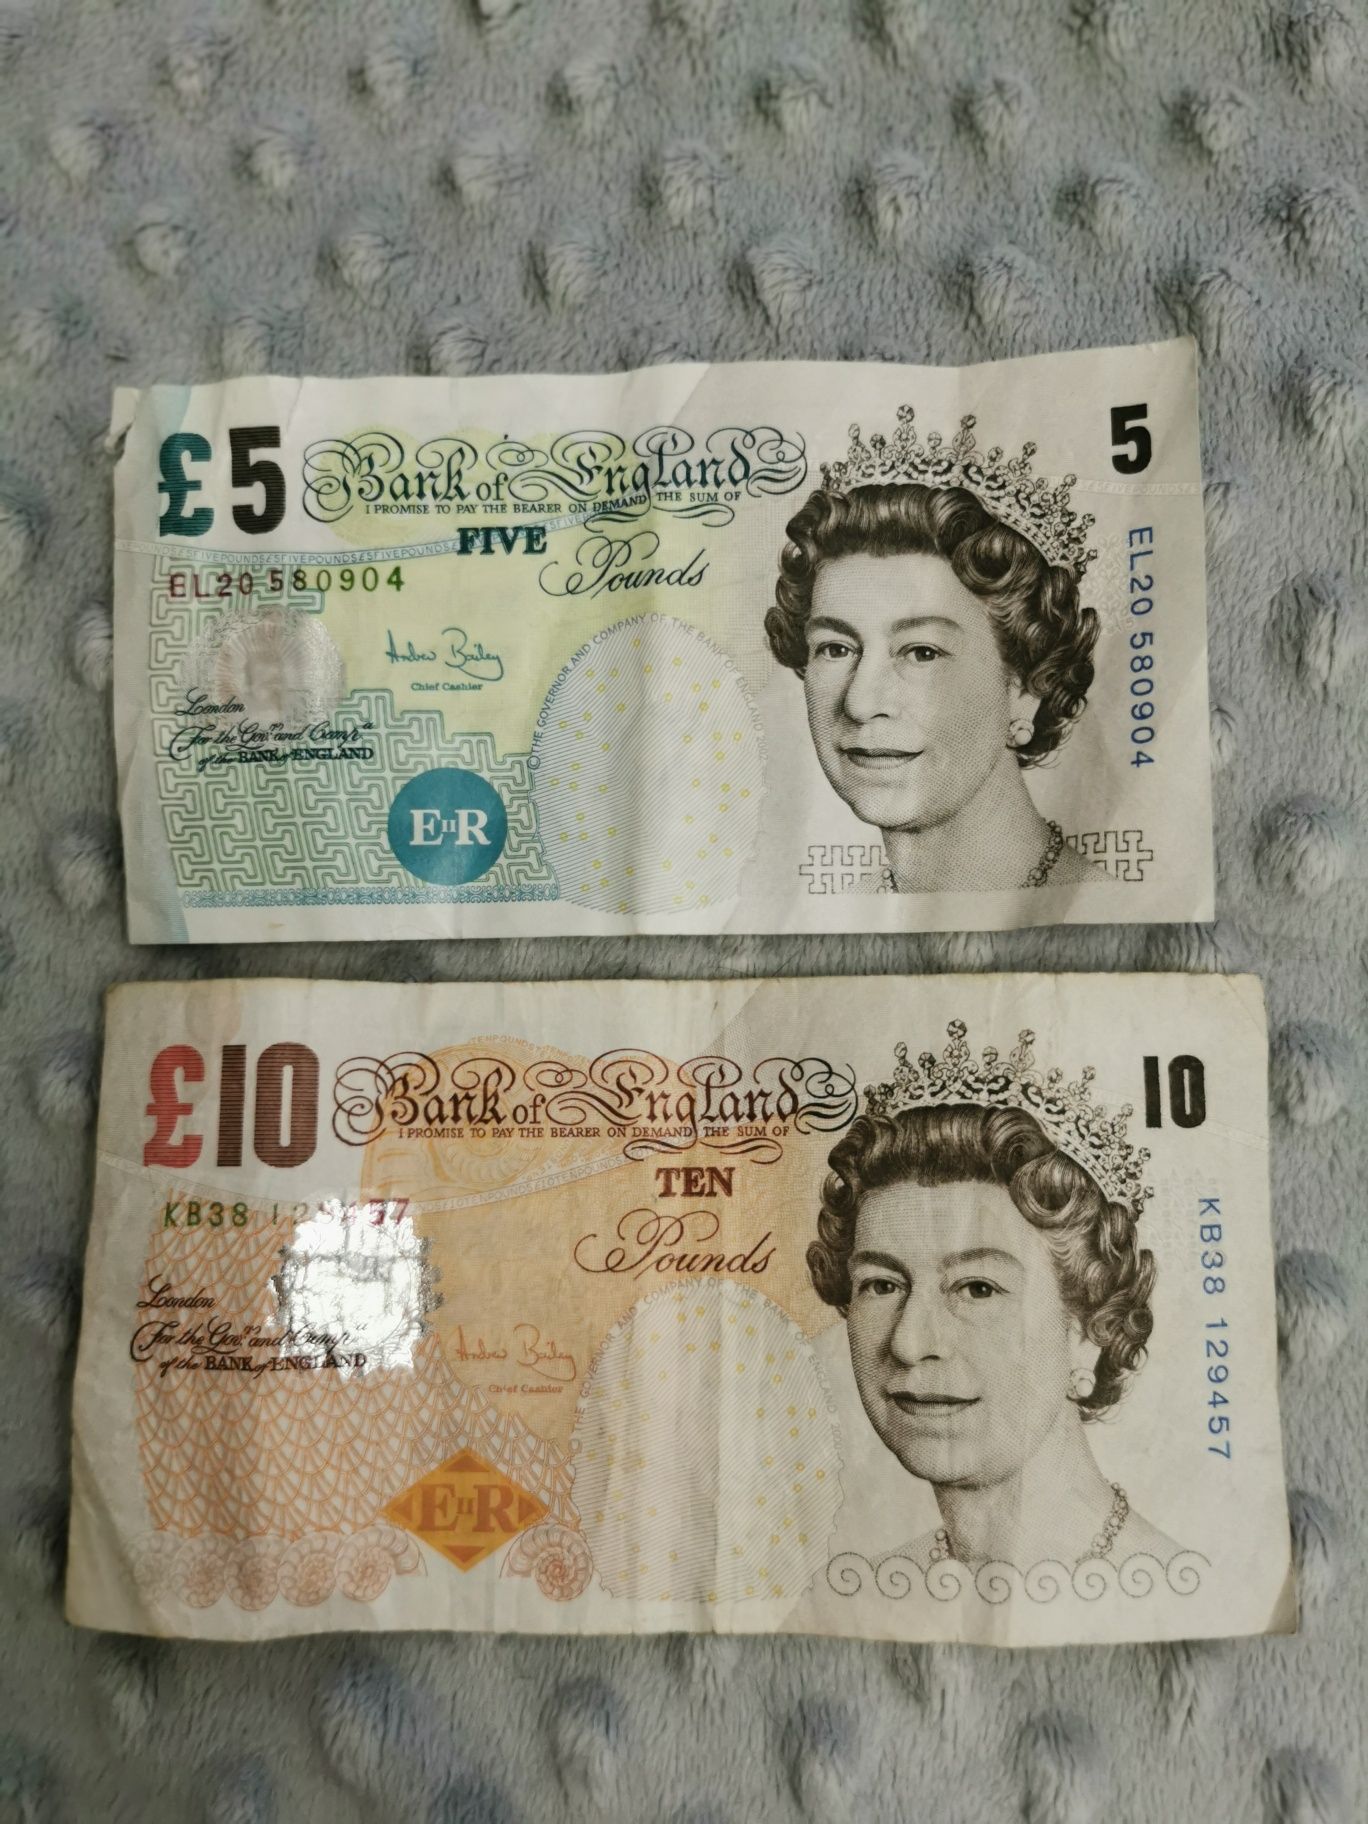 Banknot 5 £ i 10 £, stare funty wycofane kolekcjonerskie